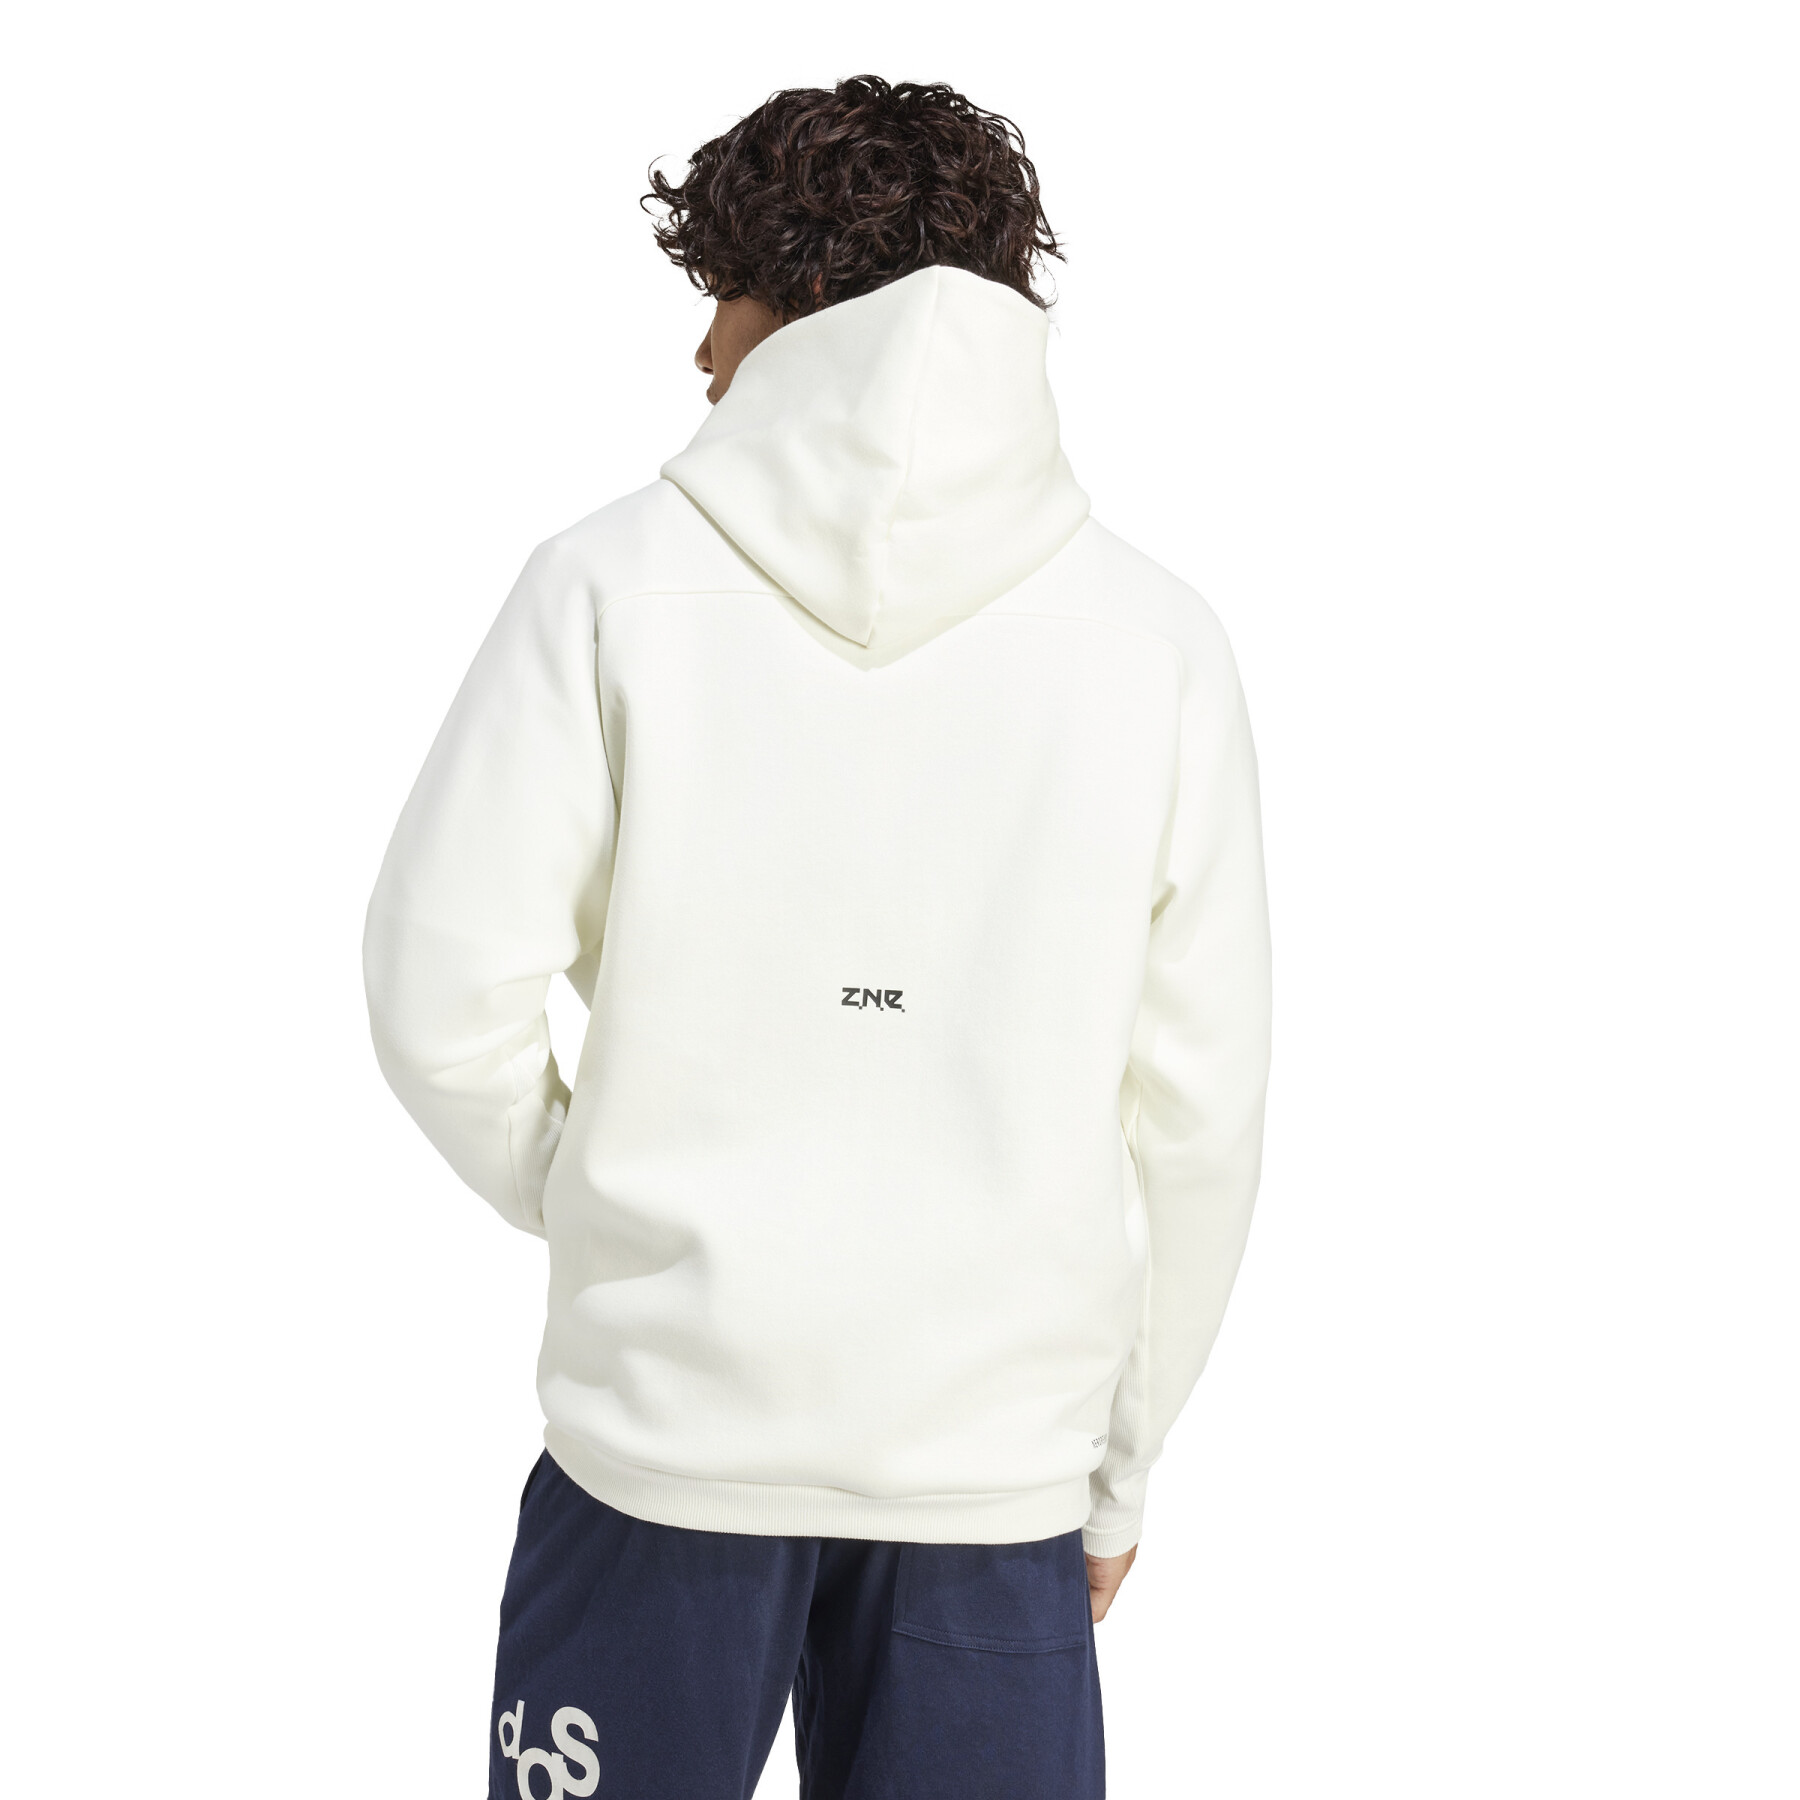 Zip-up hoodie adidas Z.N.E. Premium